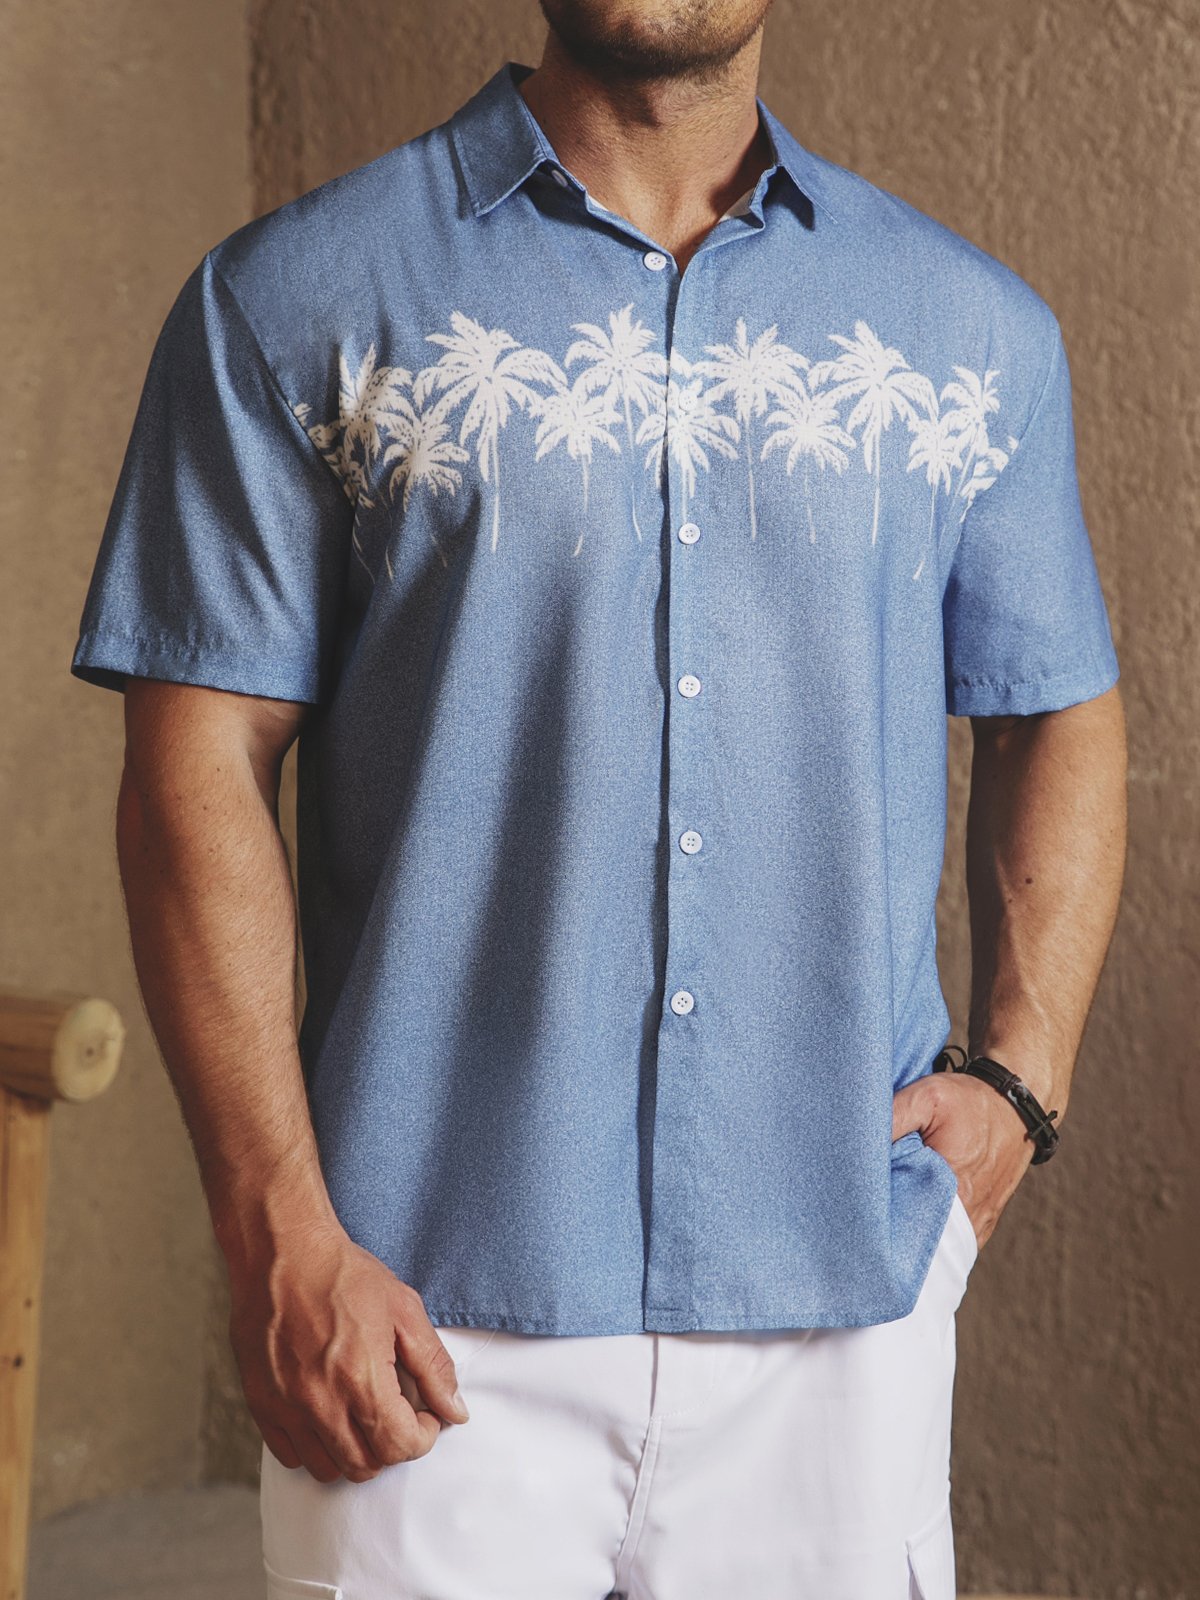 Coconut Tree Short Sleeve Resort Shirt